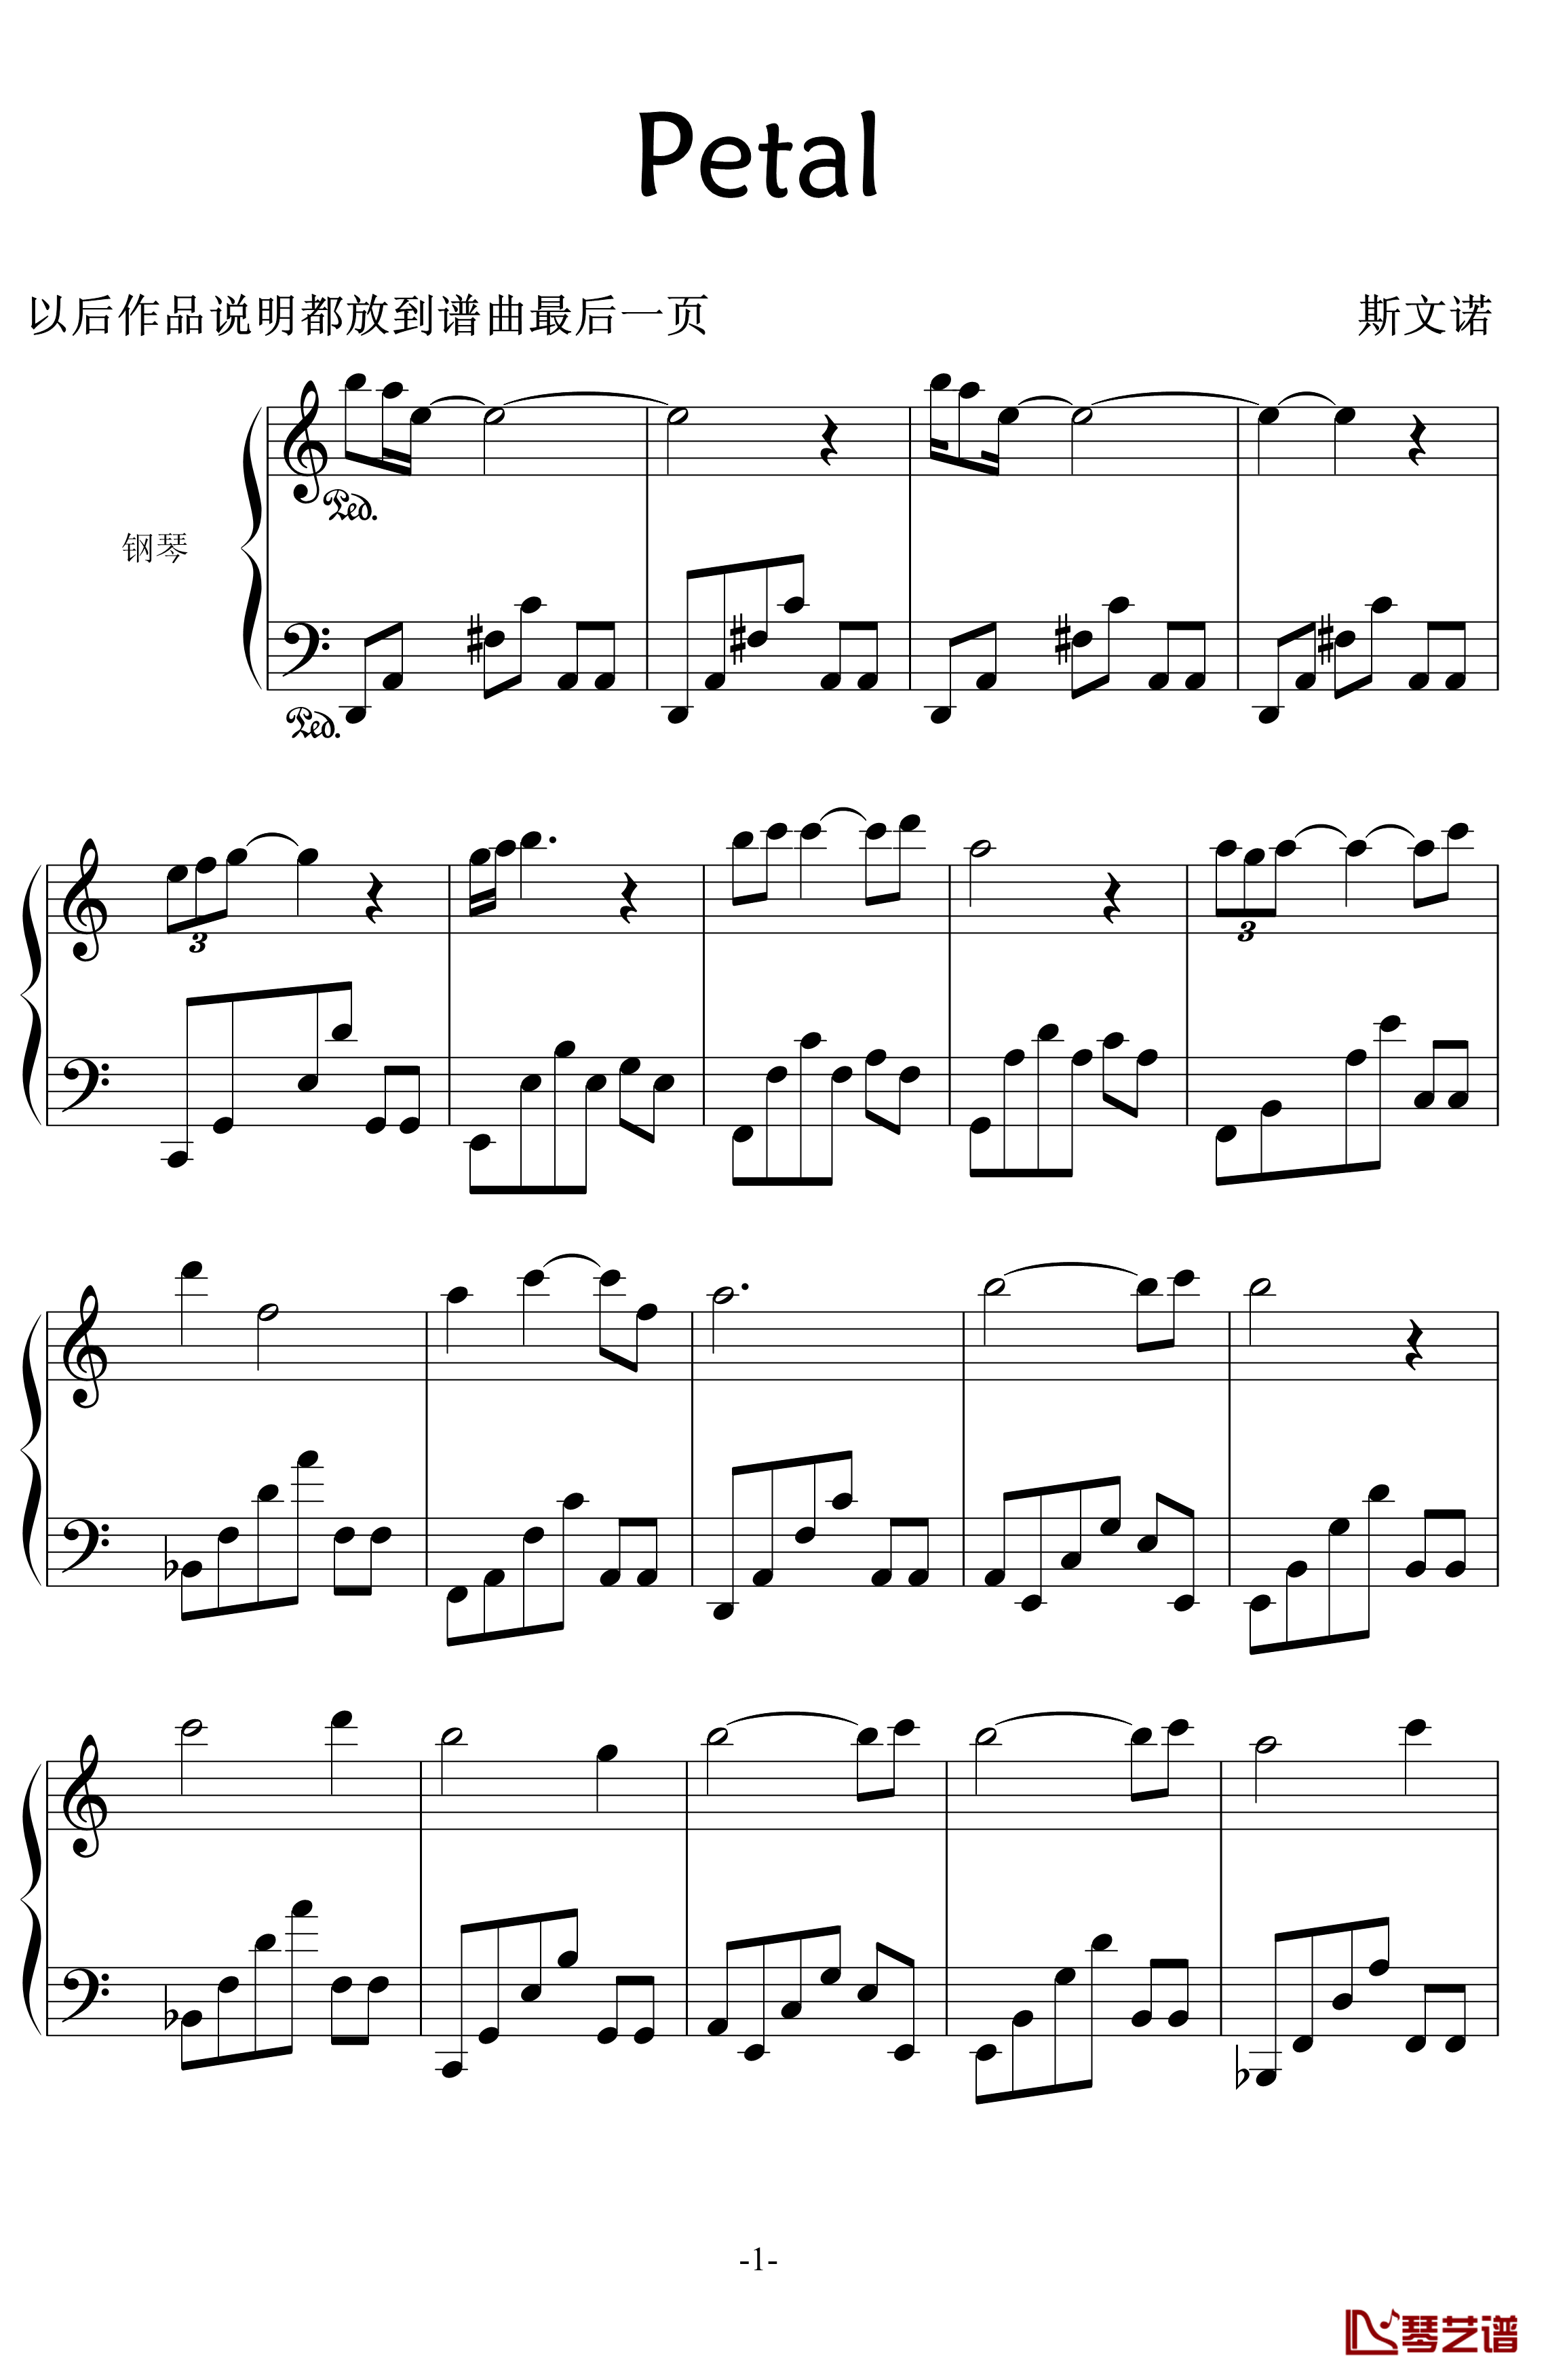 Petals钢琴谱-swenl1